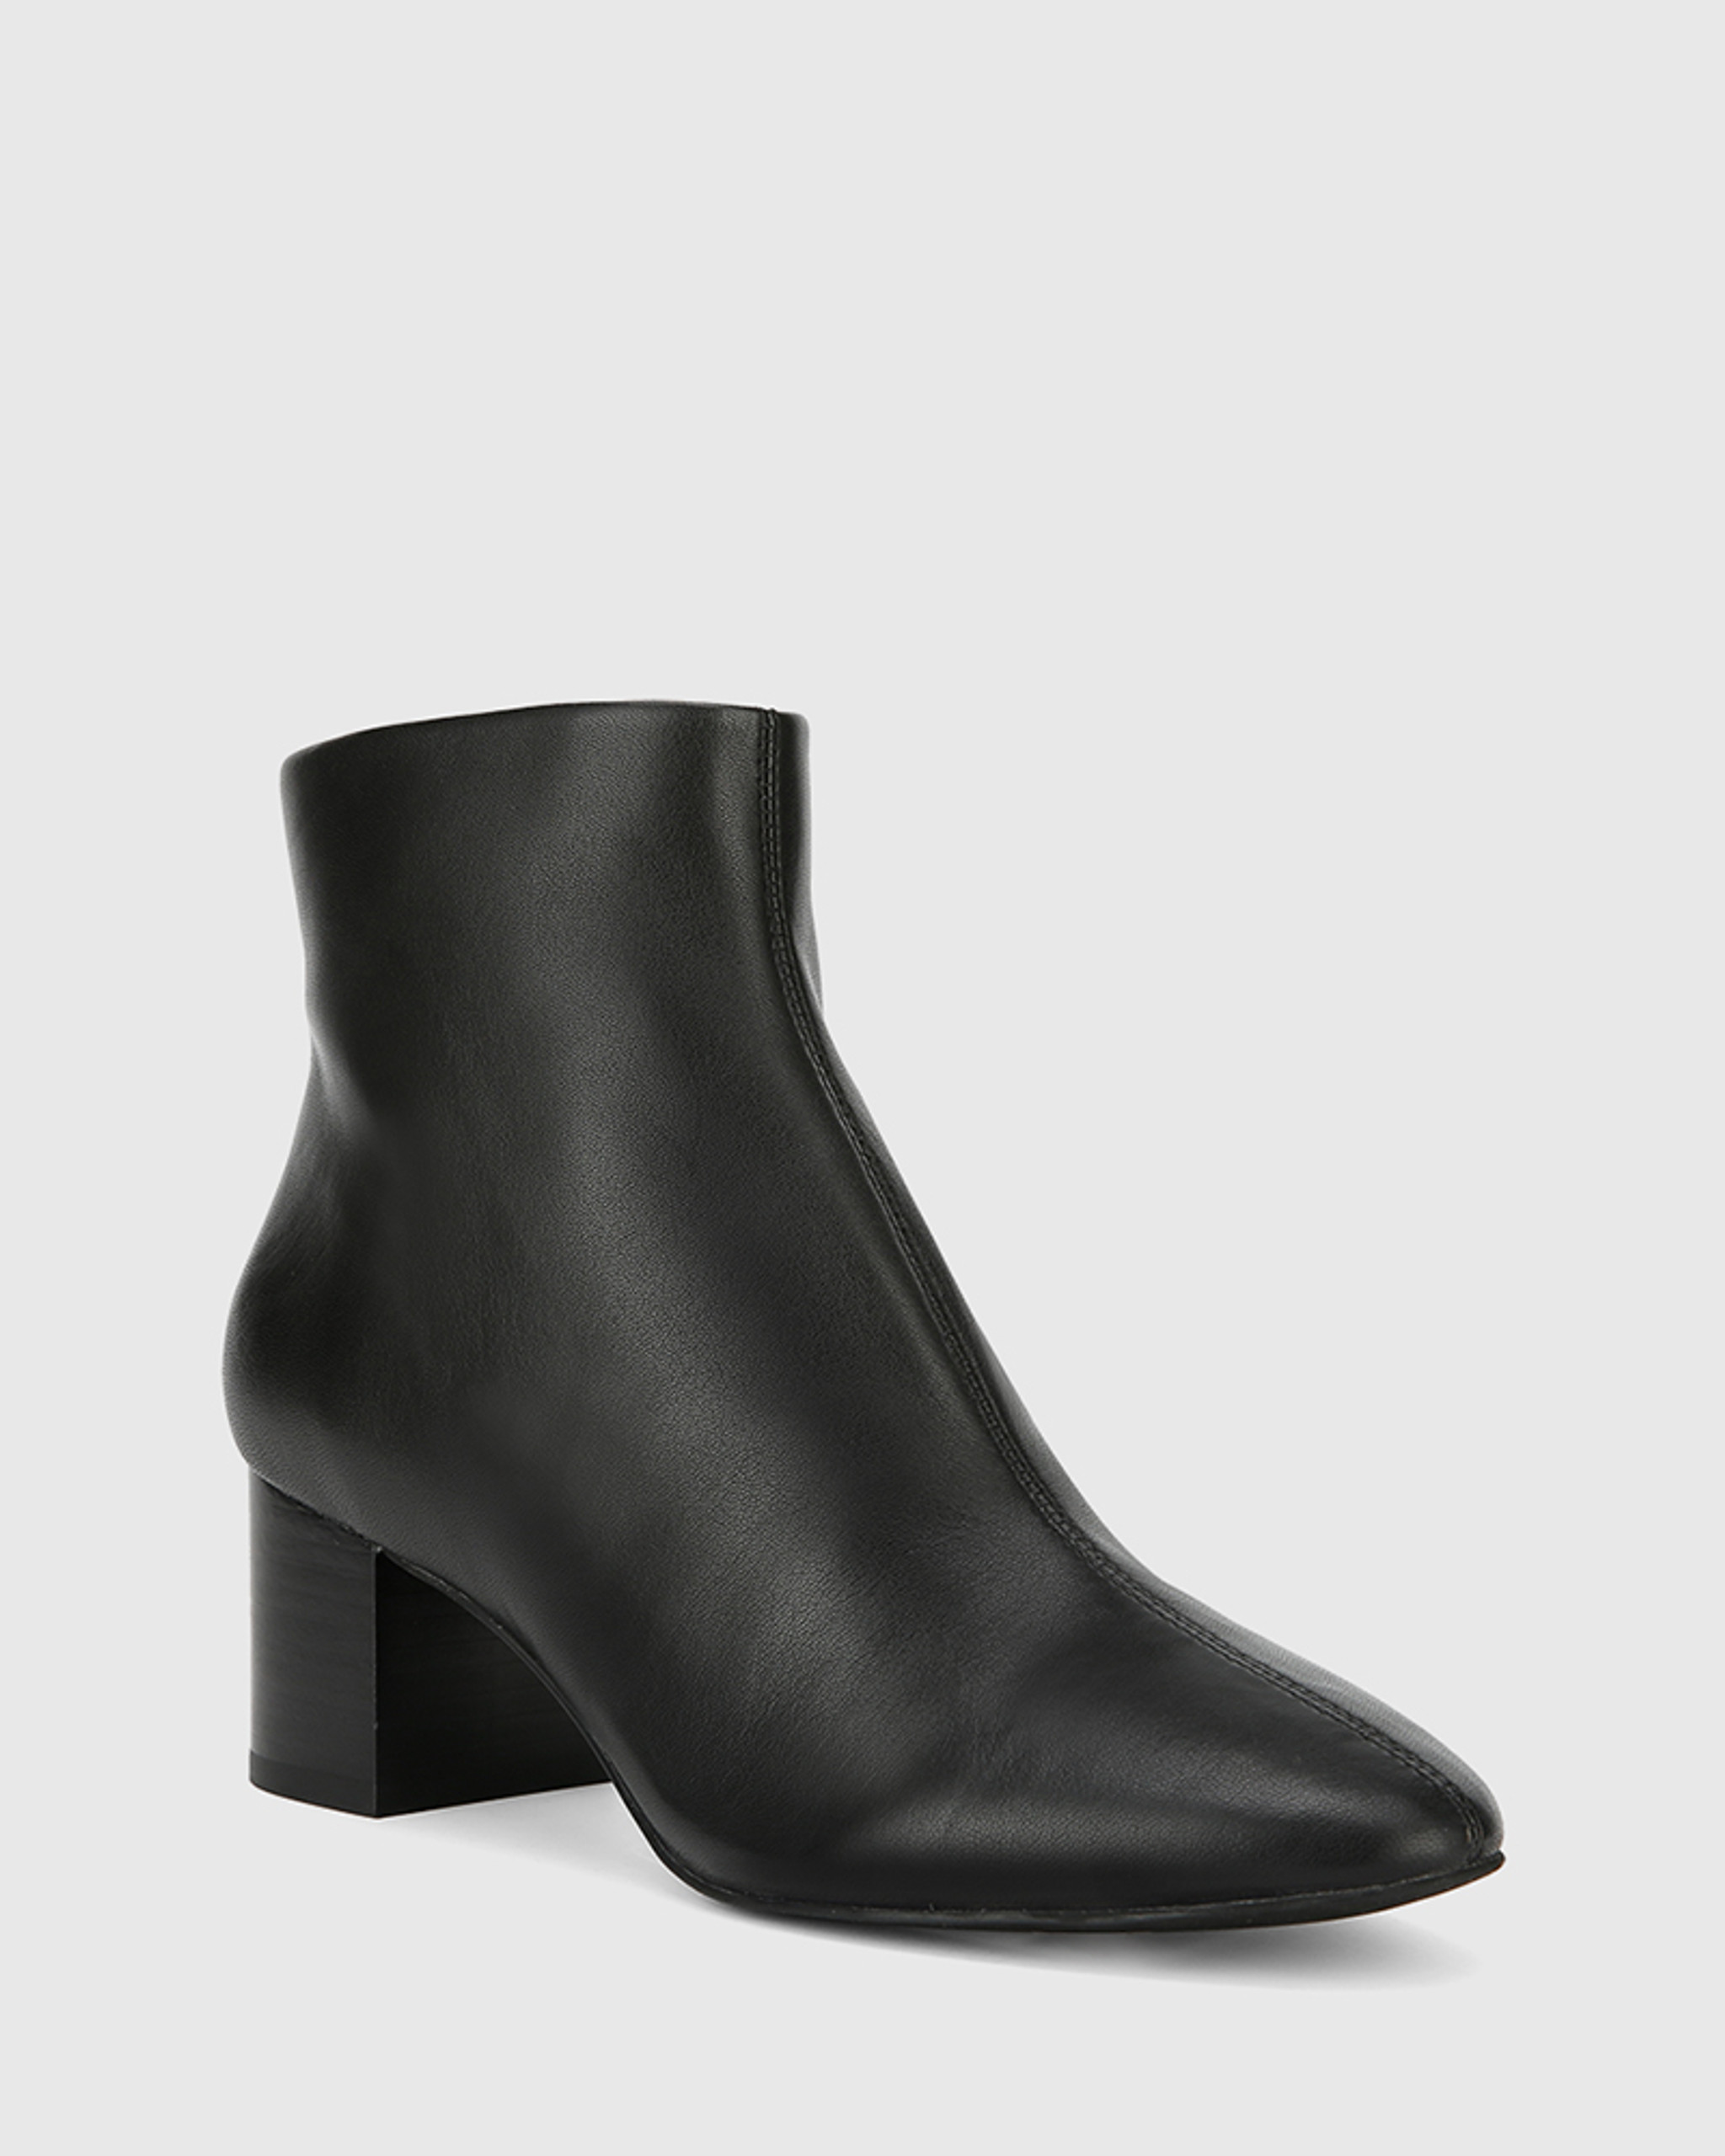 Alesha Black Leather Block Heel Ankle Boot